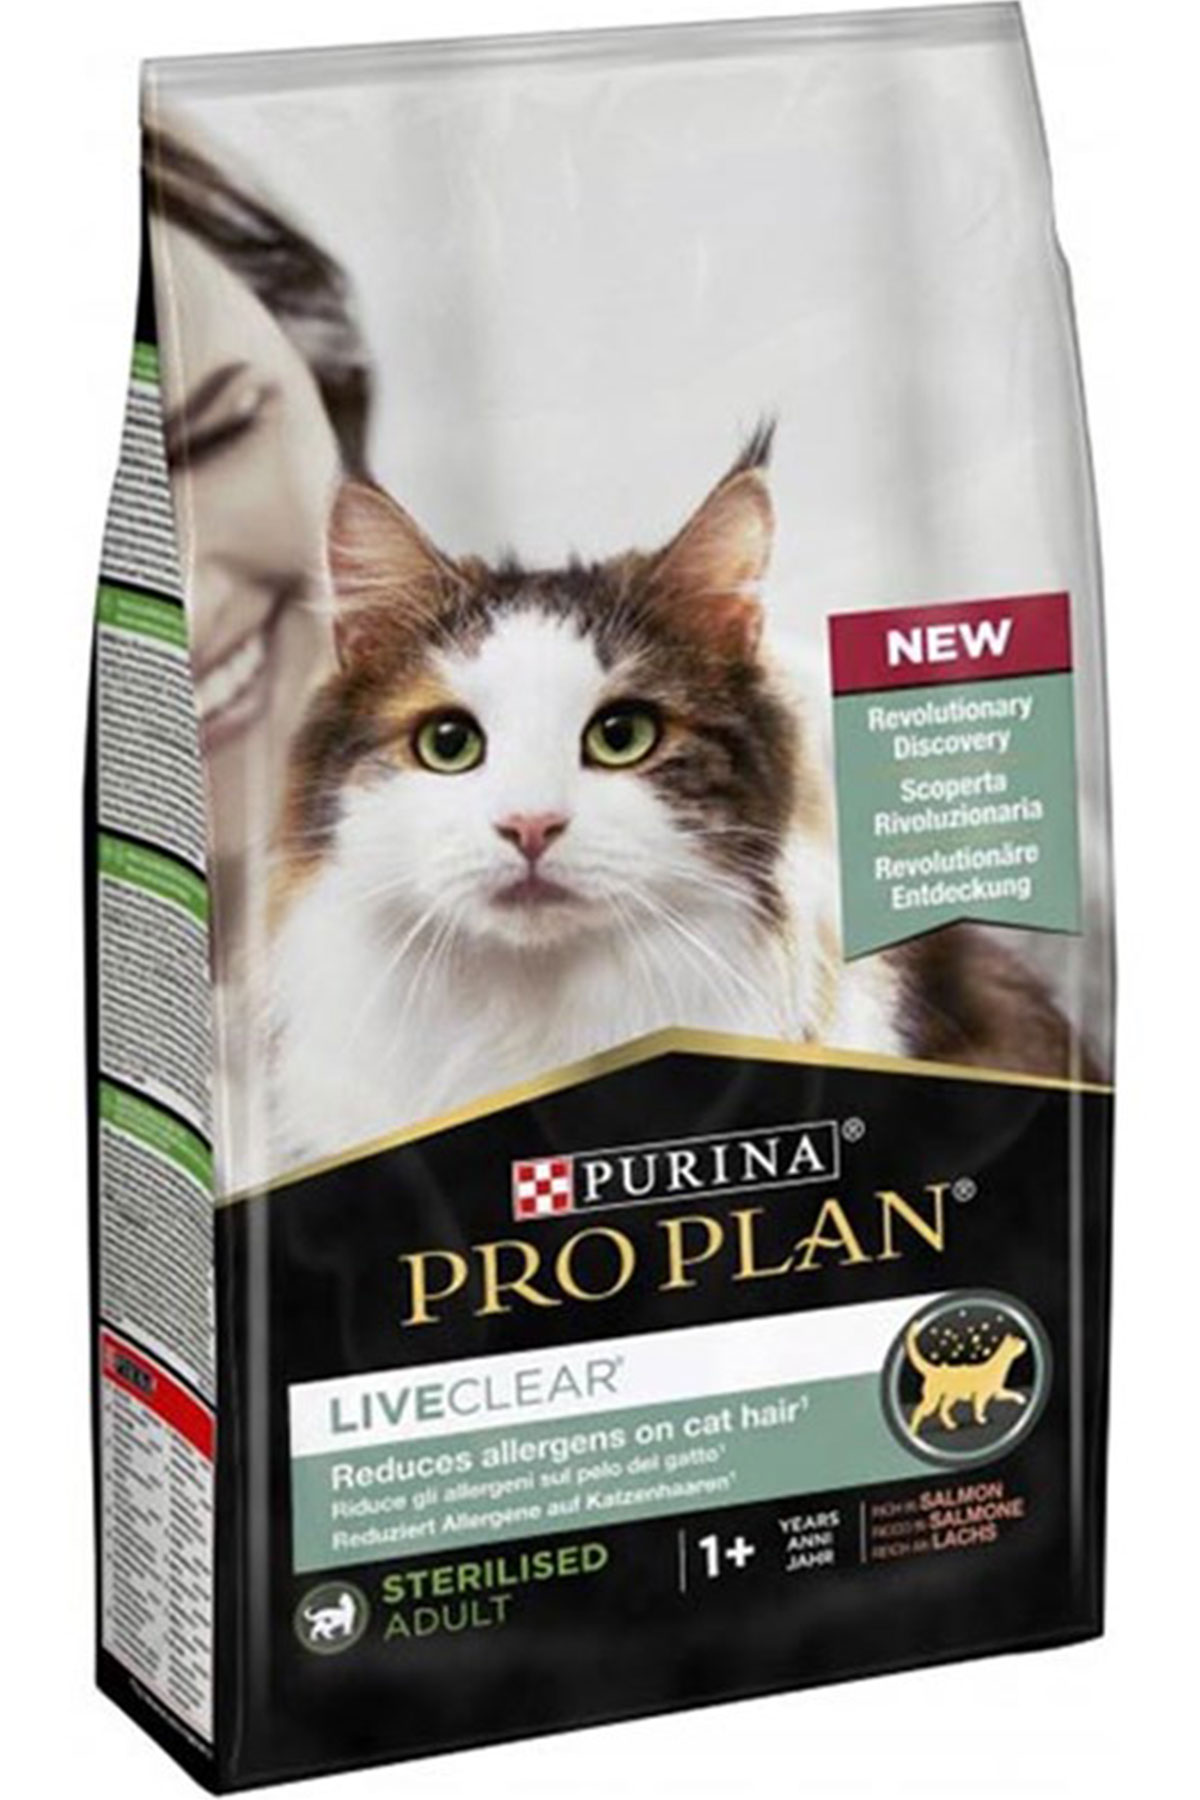 Pro Plan LiveClear Alerjen Azaltan Somonlu Kısırlaştırılmış Kedi Maması 1,4kg